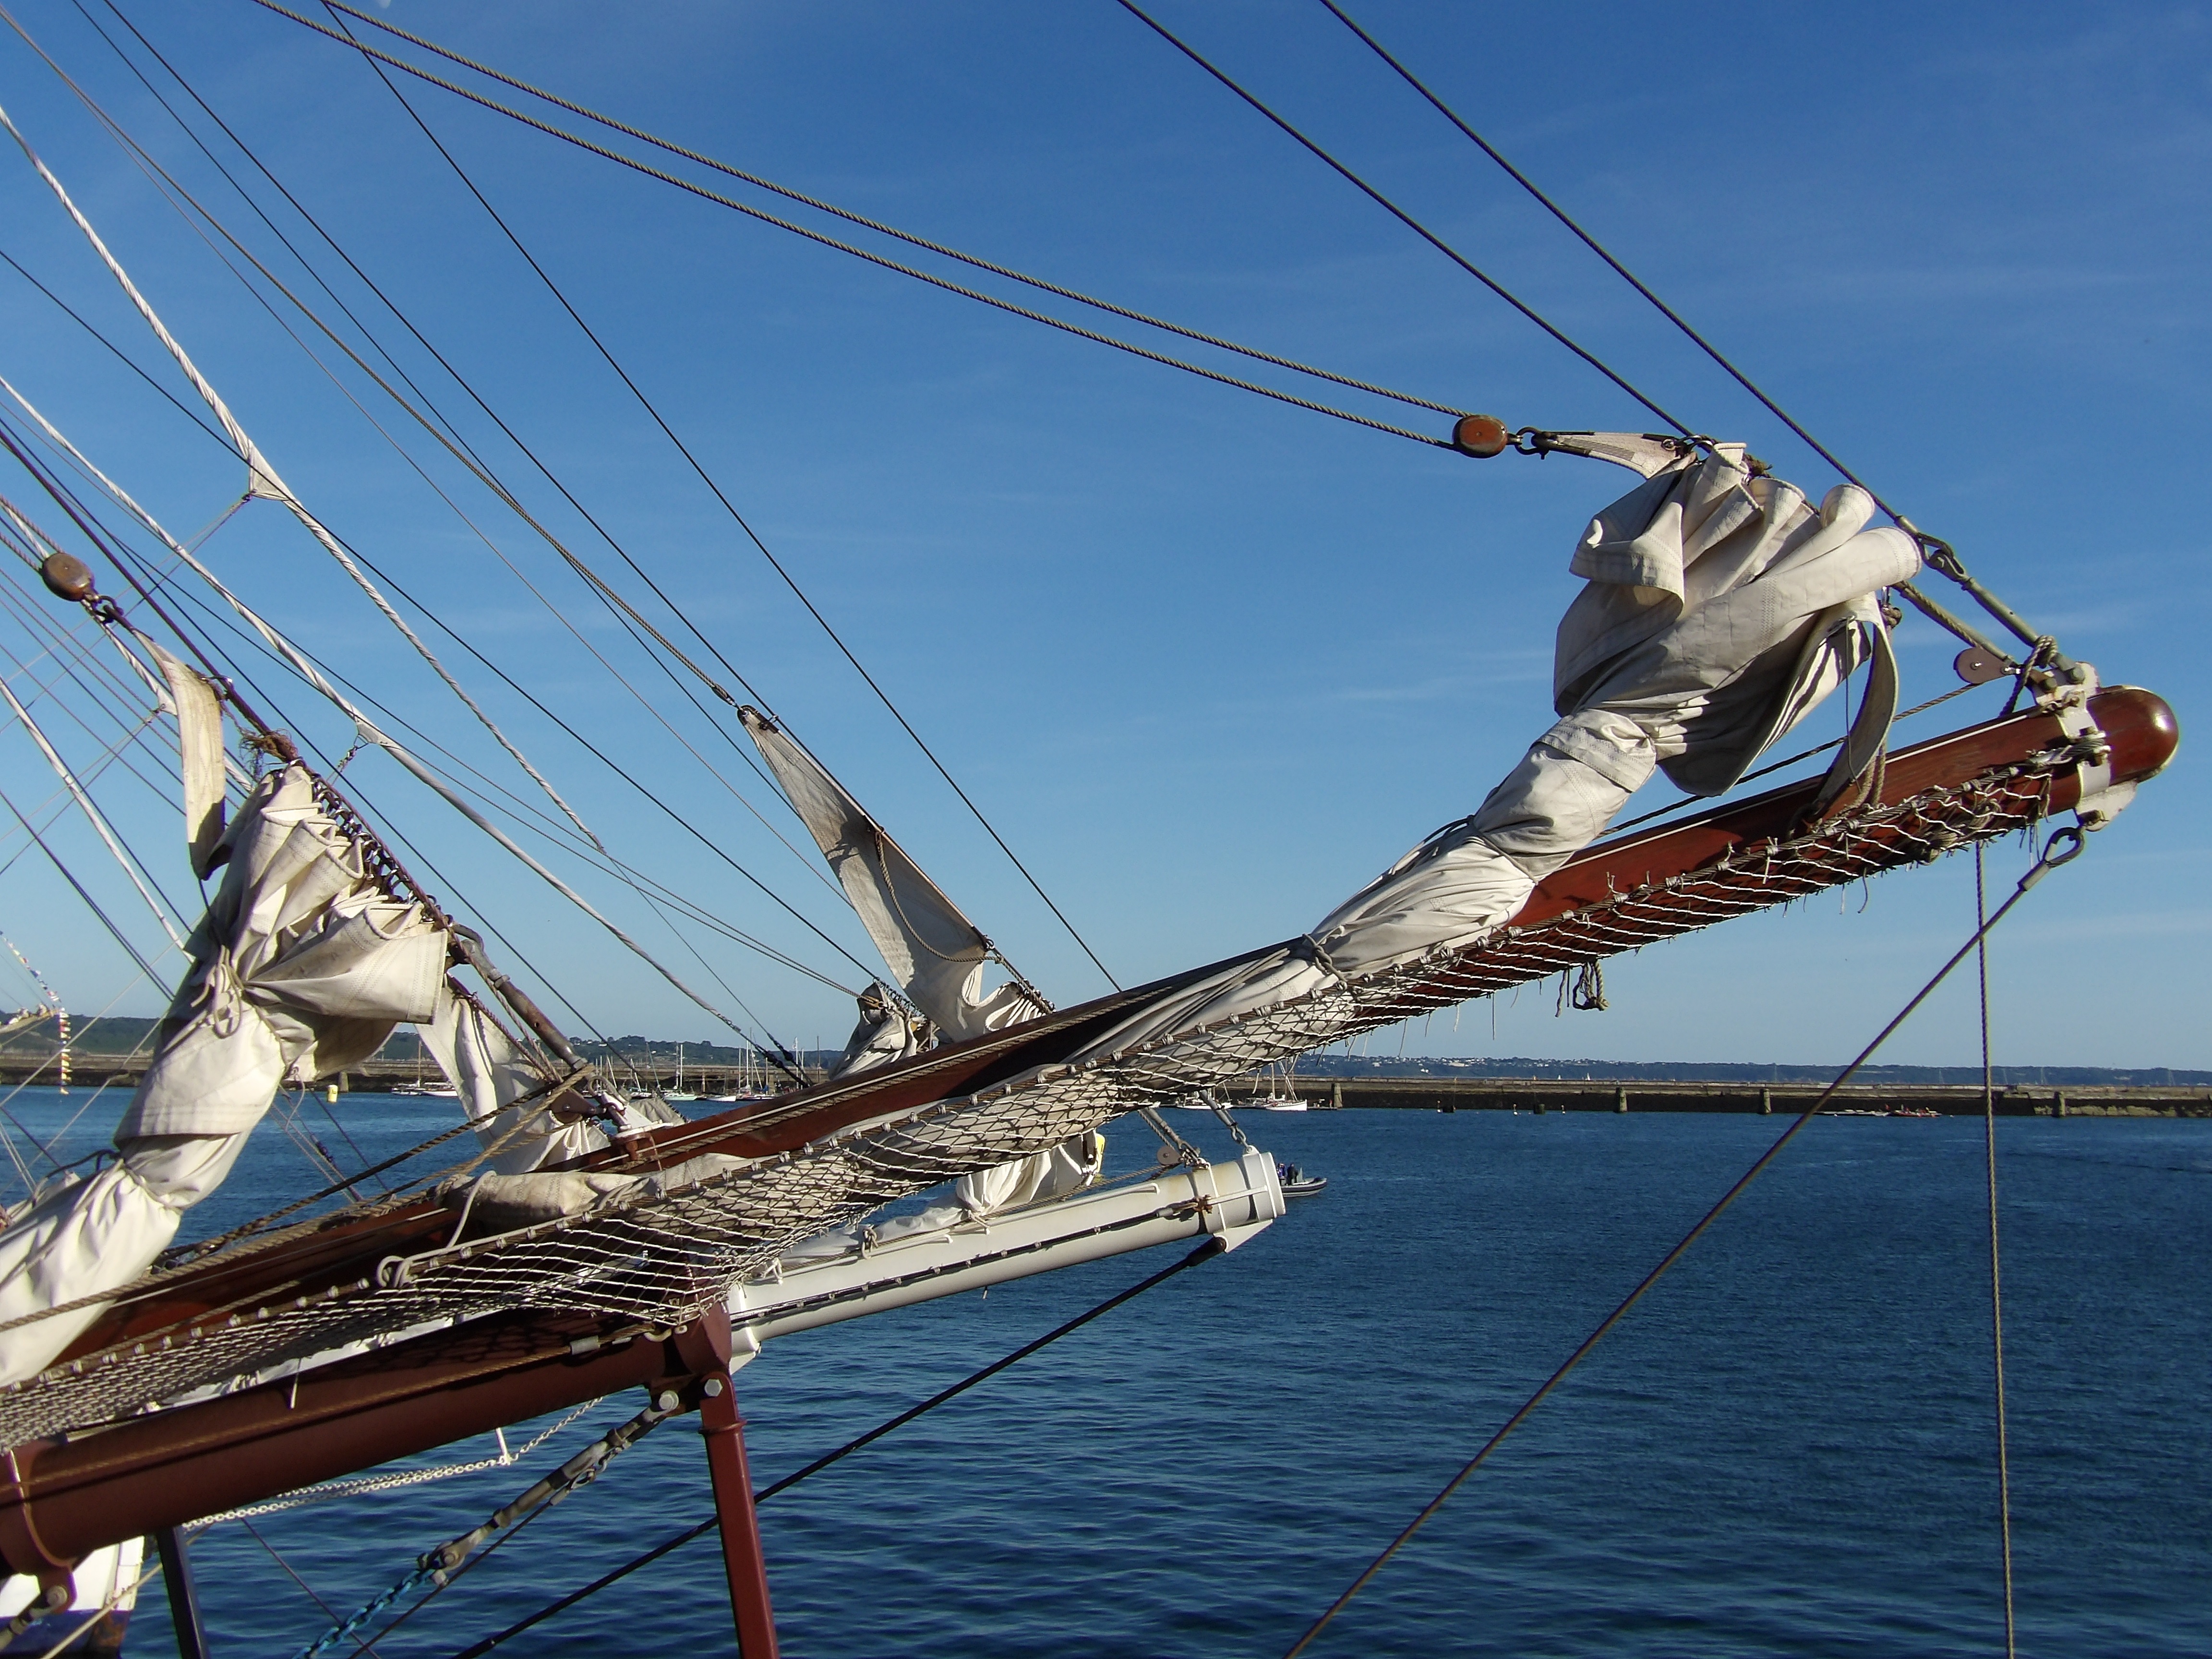 Free Images : sea, water, rope, boat, vehicle, mast, sailboat, sail ...